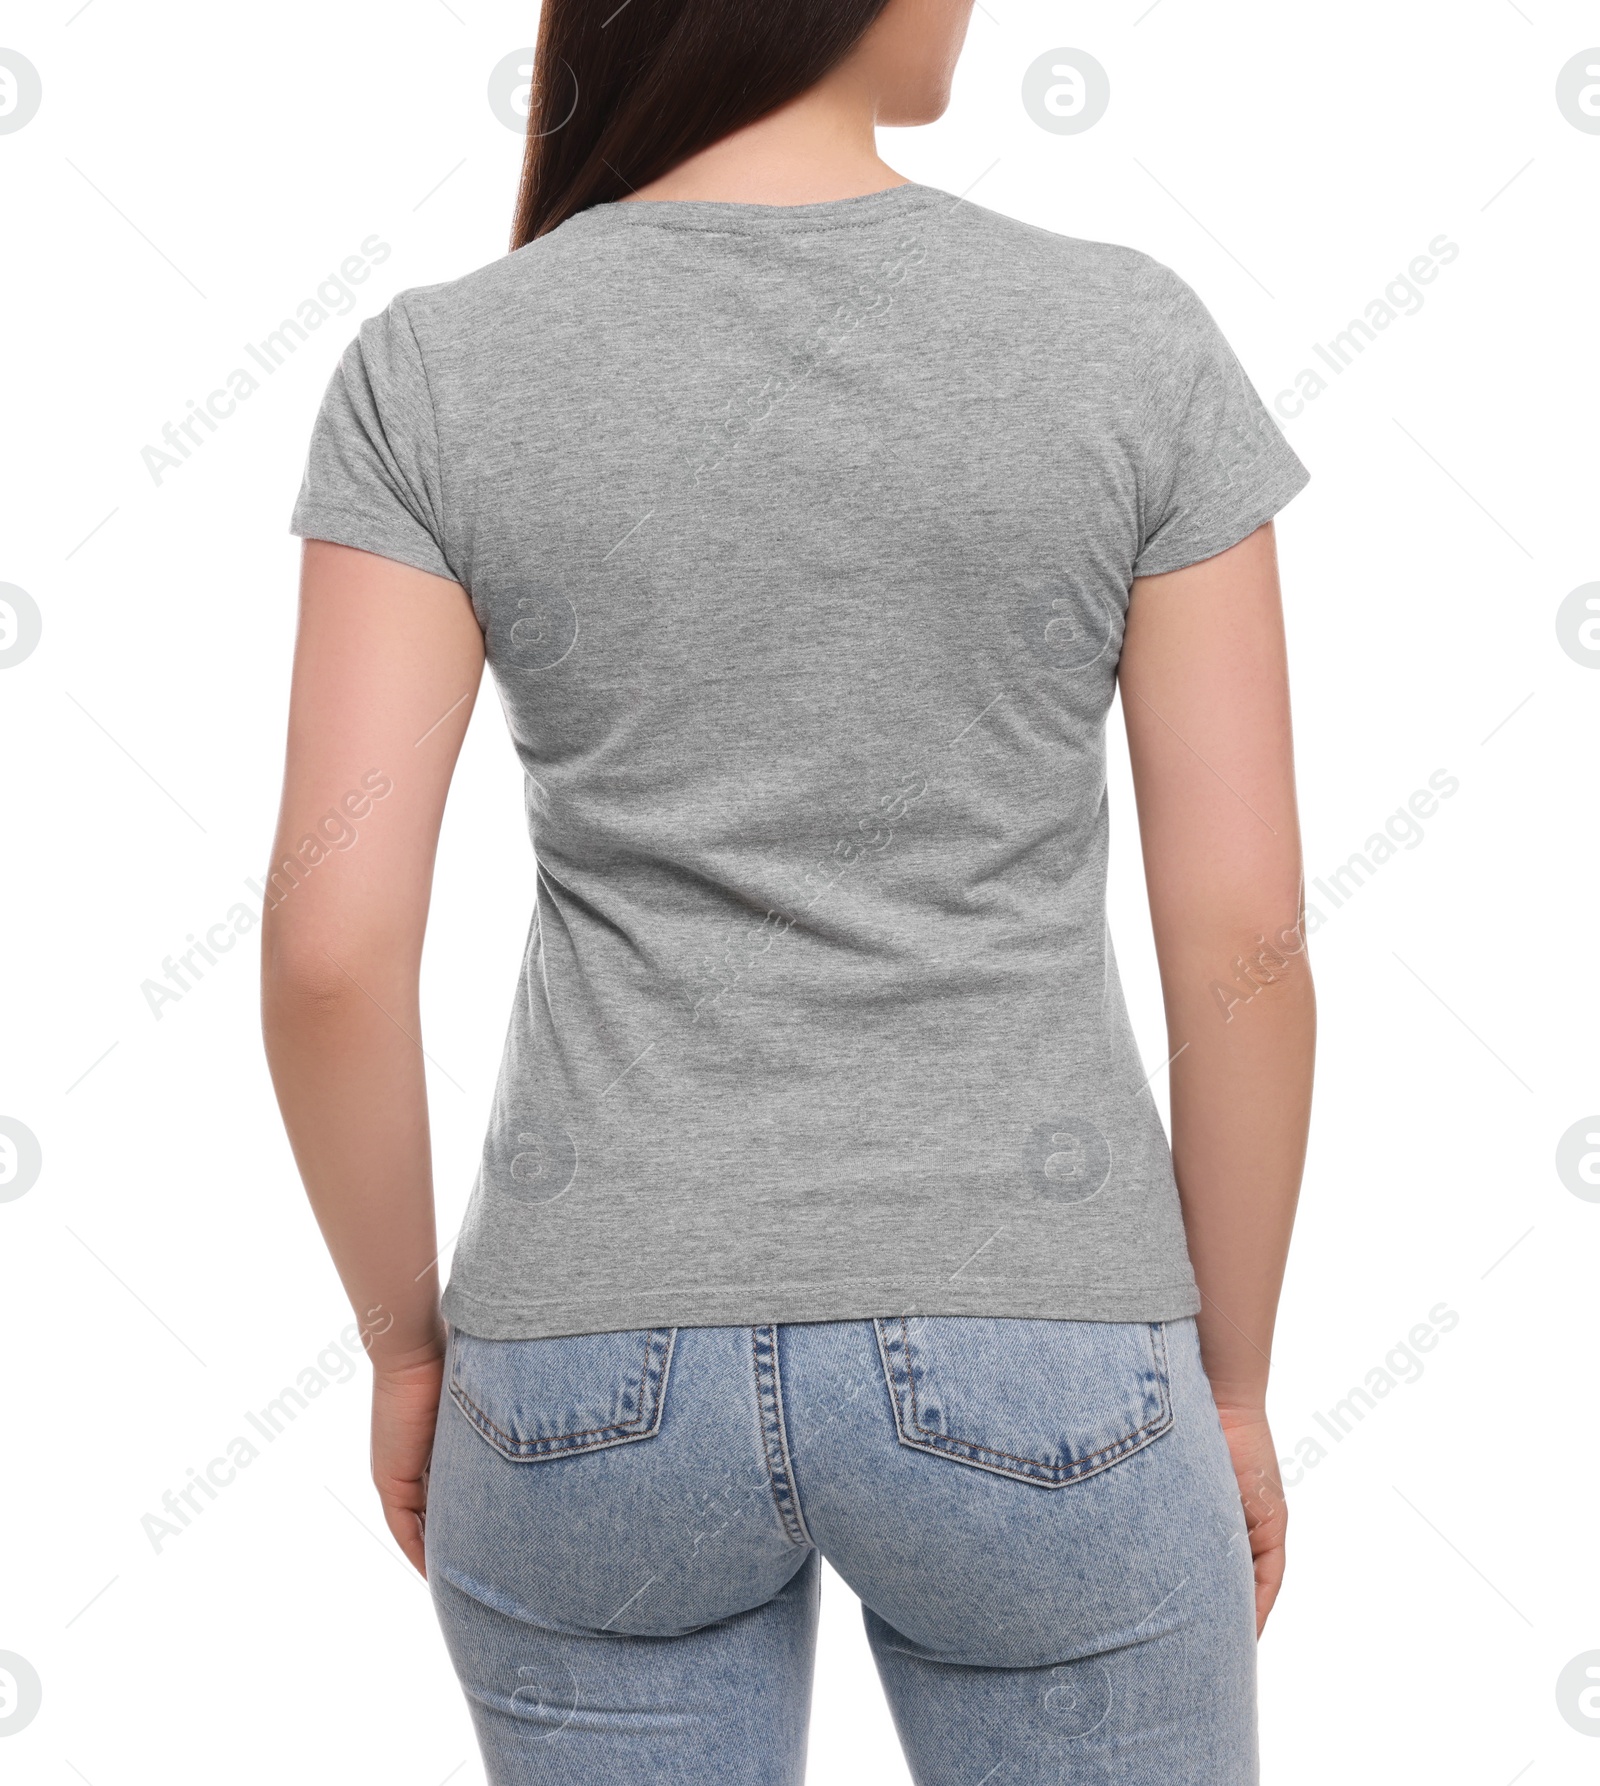 Photo of Woman wearing stylish gray T-shirt on white background, closeup